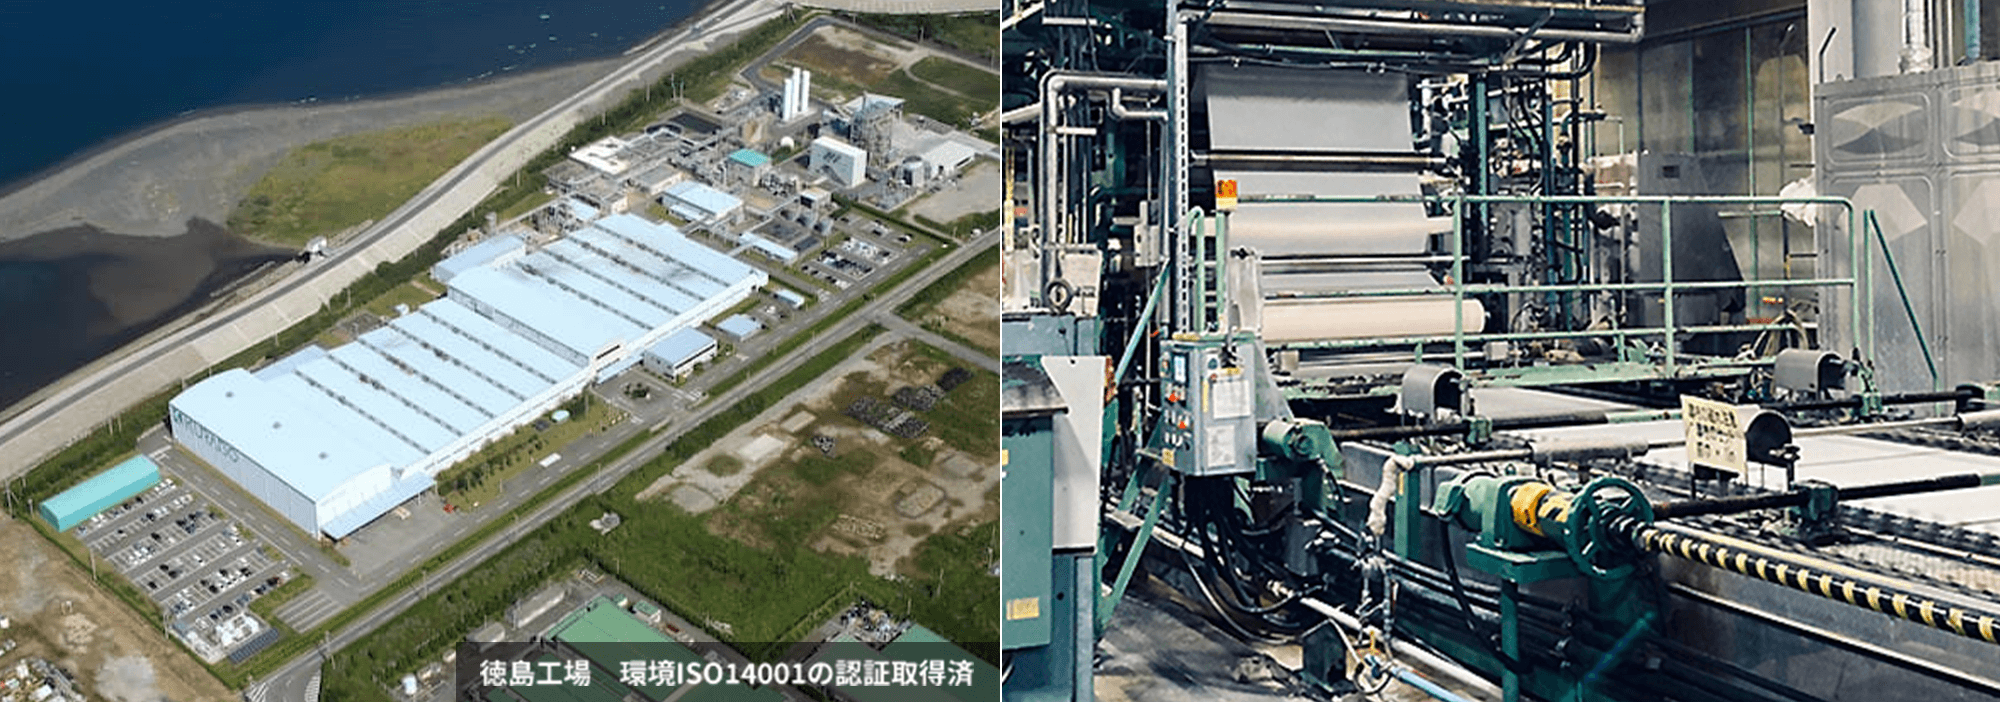 徳島工場 環境ISO14001の認証取得済